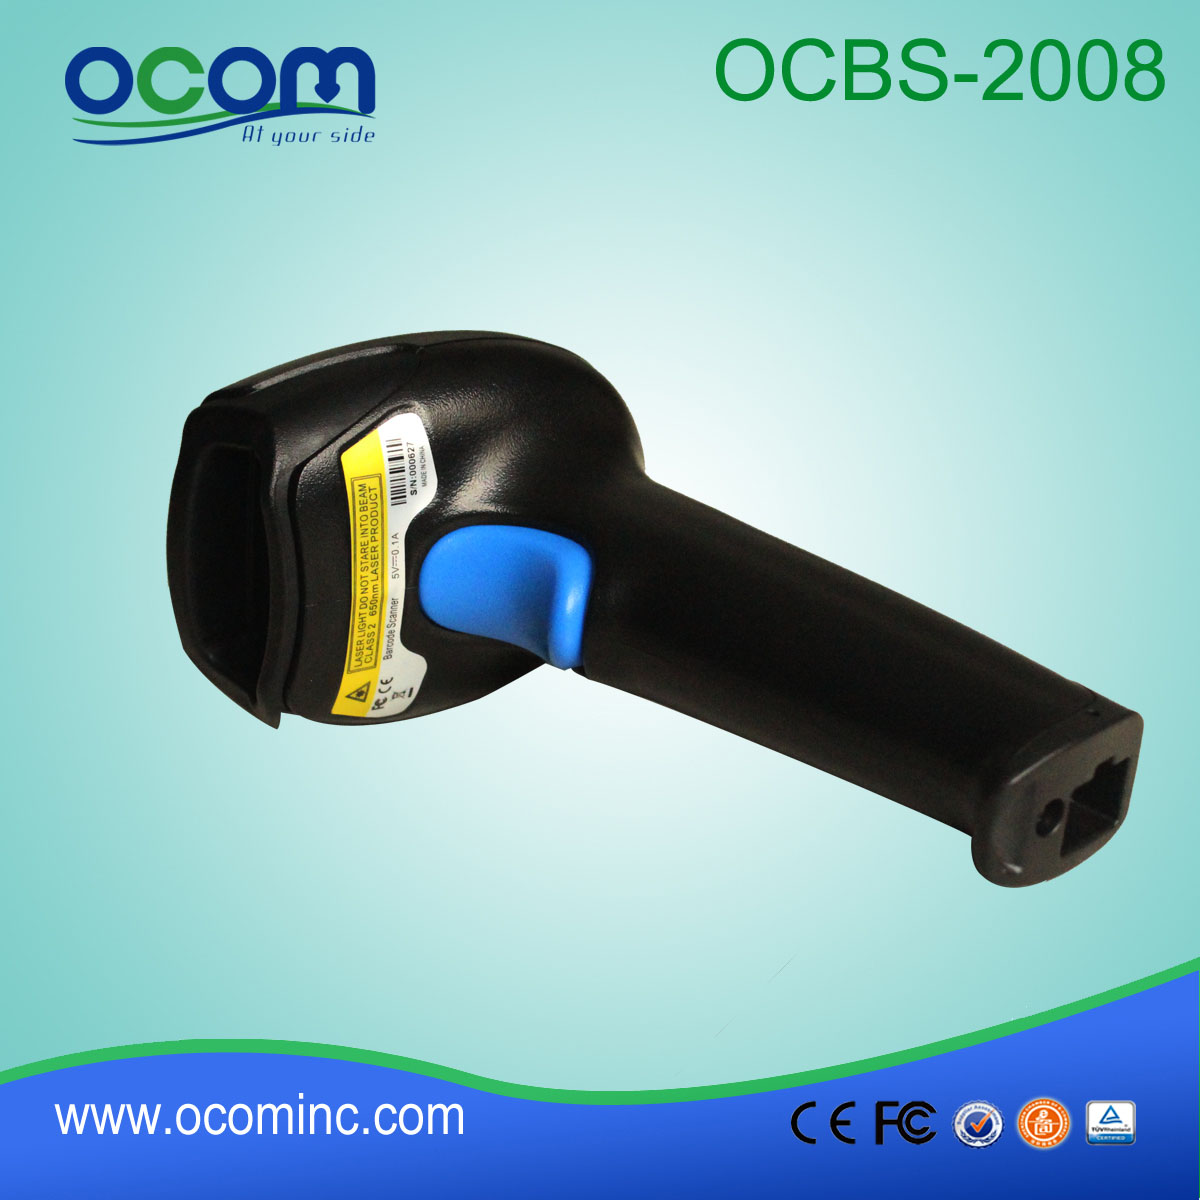 二维码QR码图像条码扫描器（OCBS-2008）